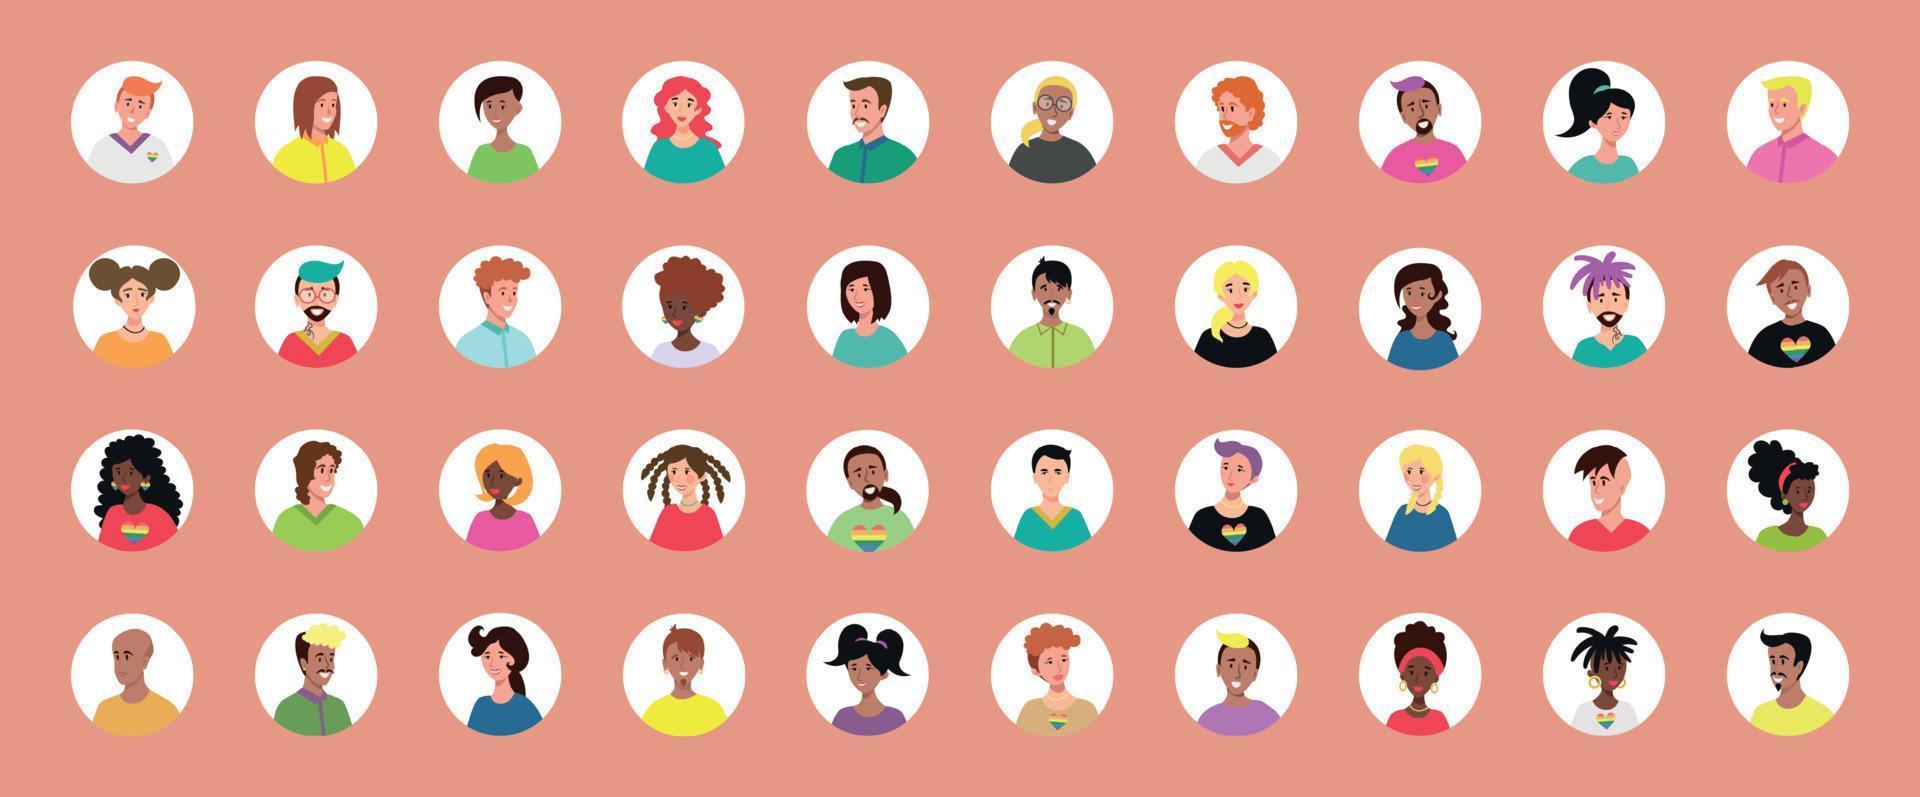 Satz von 40 eingekreisten Avataren mit den Gesichtern junger Menschen. Bild verschiedener Rassen und Nationalitäten, Frauen und Männer. satz von benutzerprofilsymbolen. Runde Abzeichen mit glücklichen Menschen - Vektor